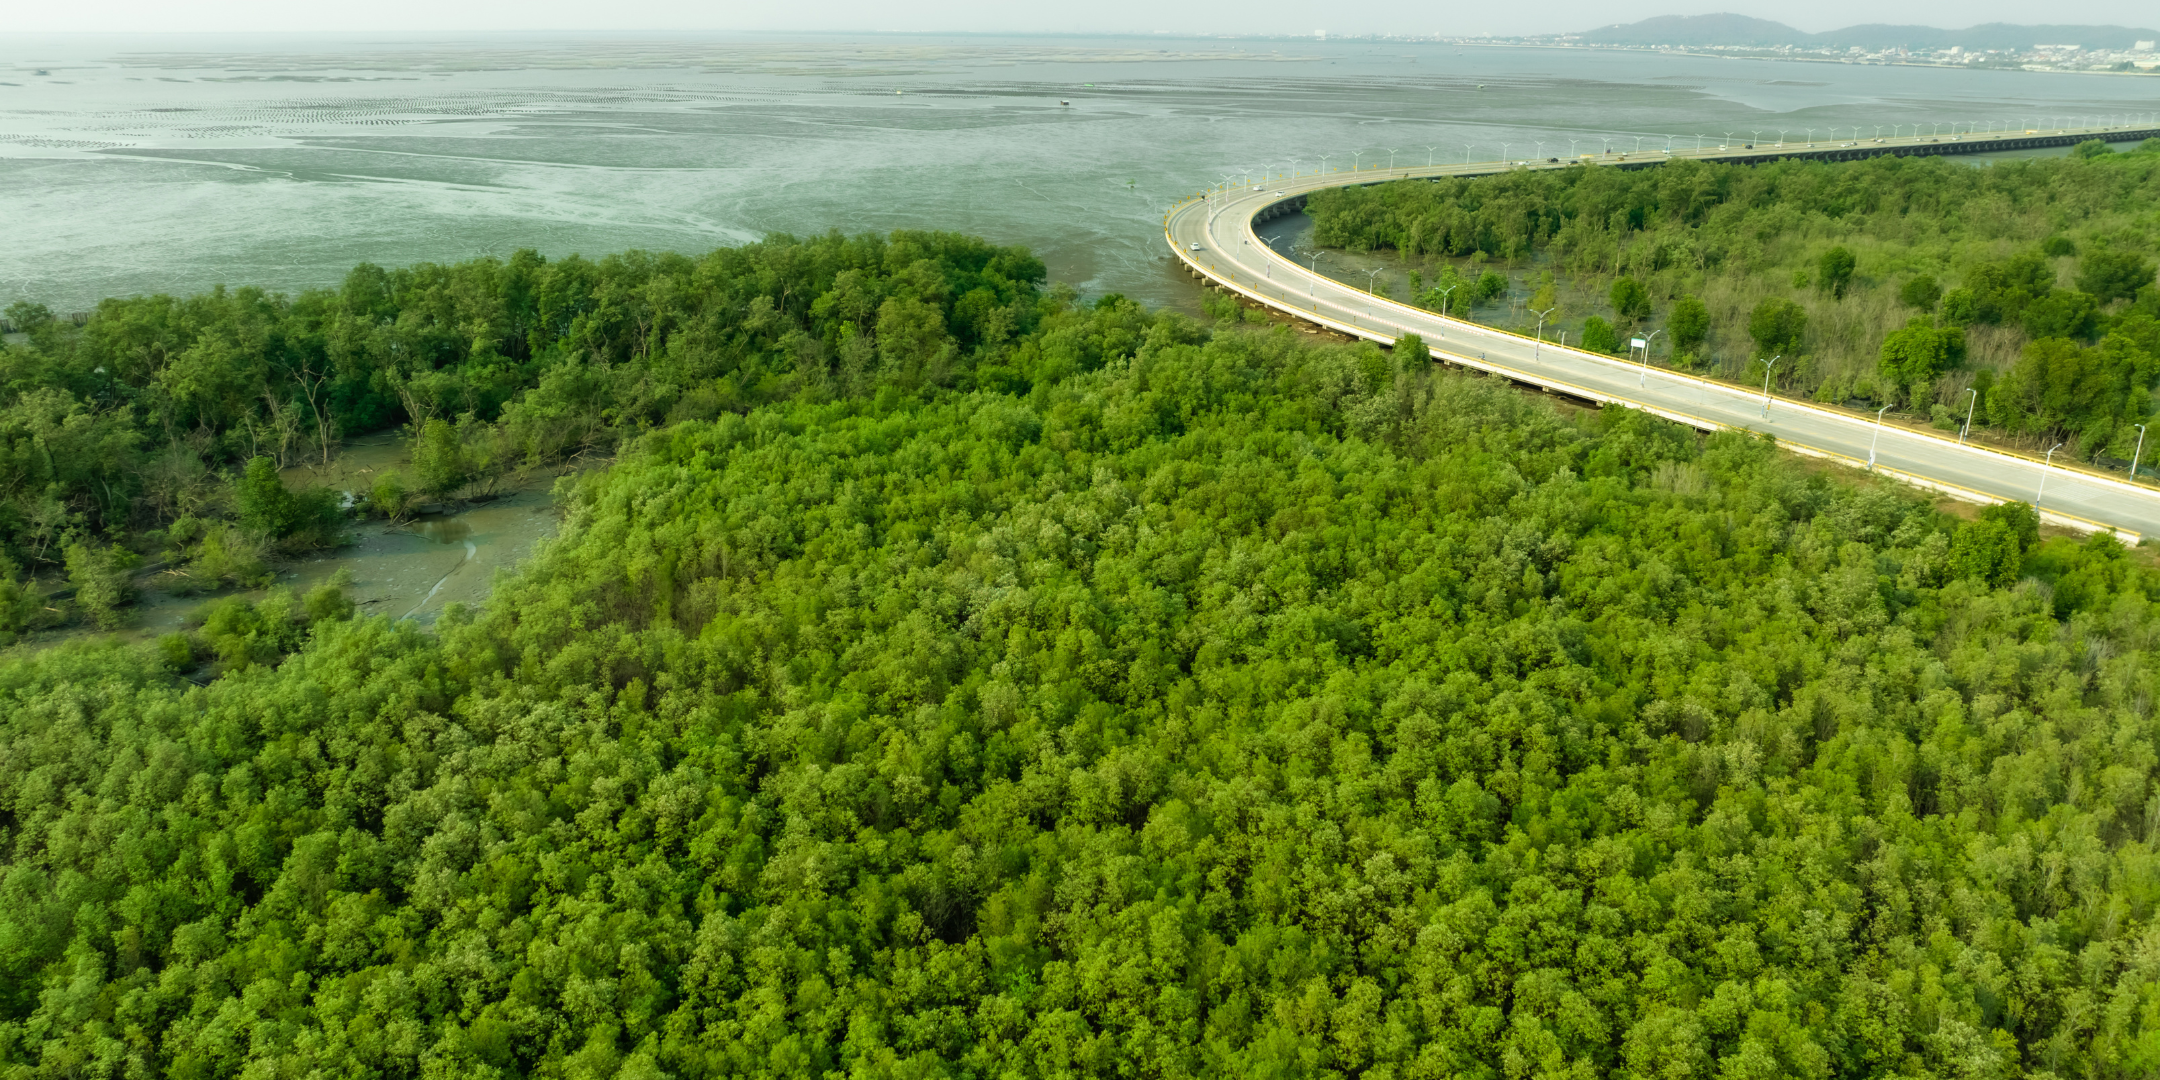 Green mangrove forest that captures carbon monoxide